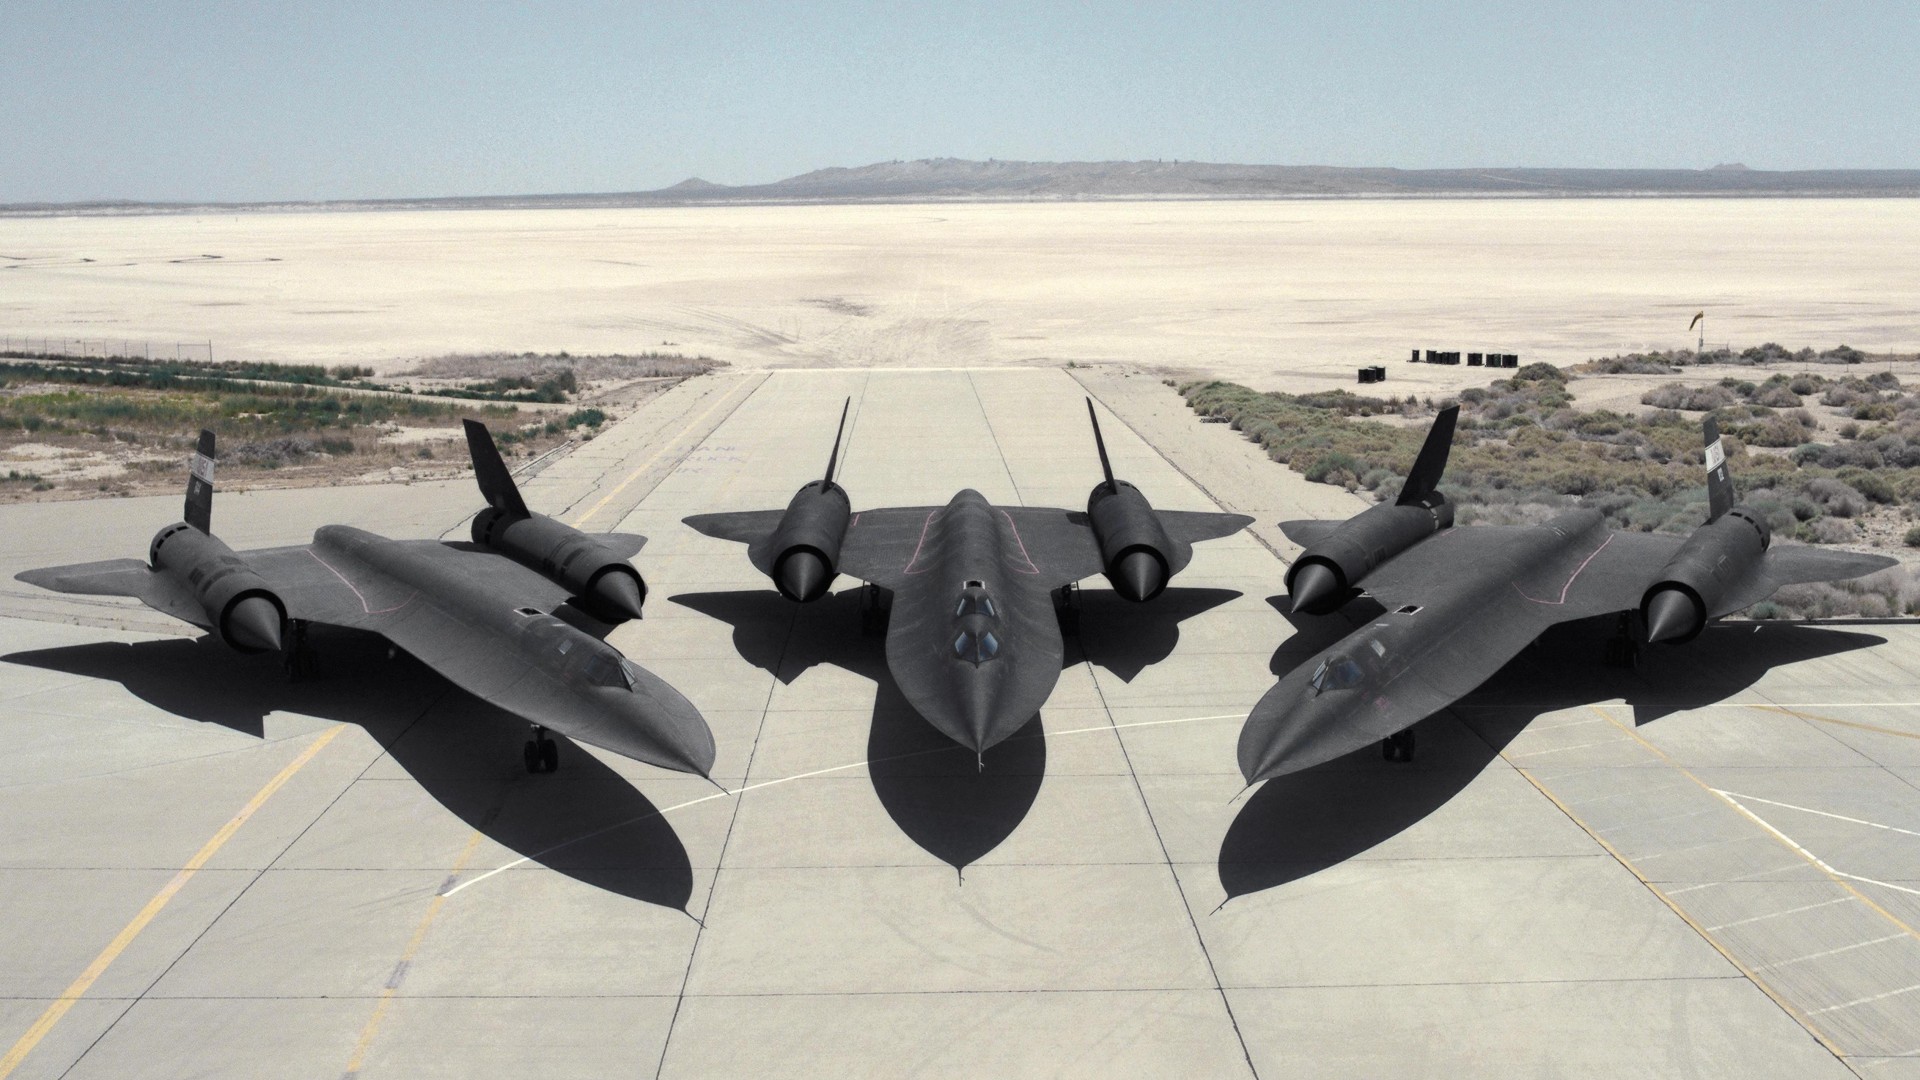 сверхзвуковой, разведчик, SR-71, Lockheed, Blackbird, jet, plane, aircraft, runway, U.S. Air Force (horizontal)